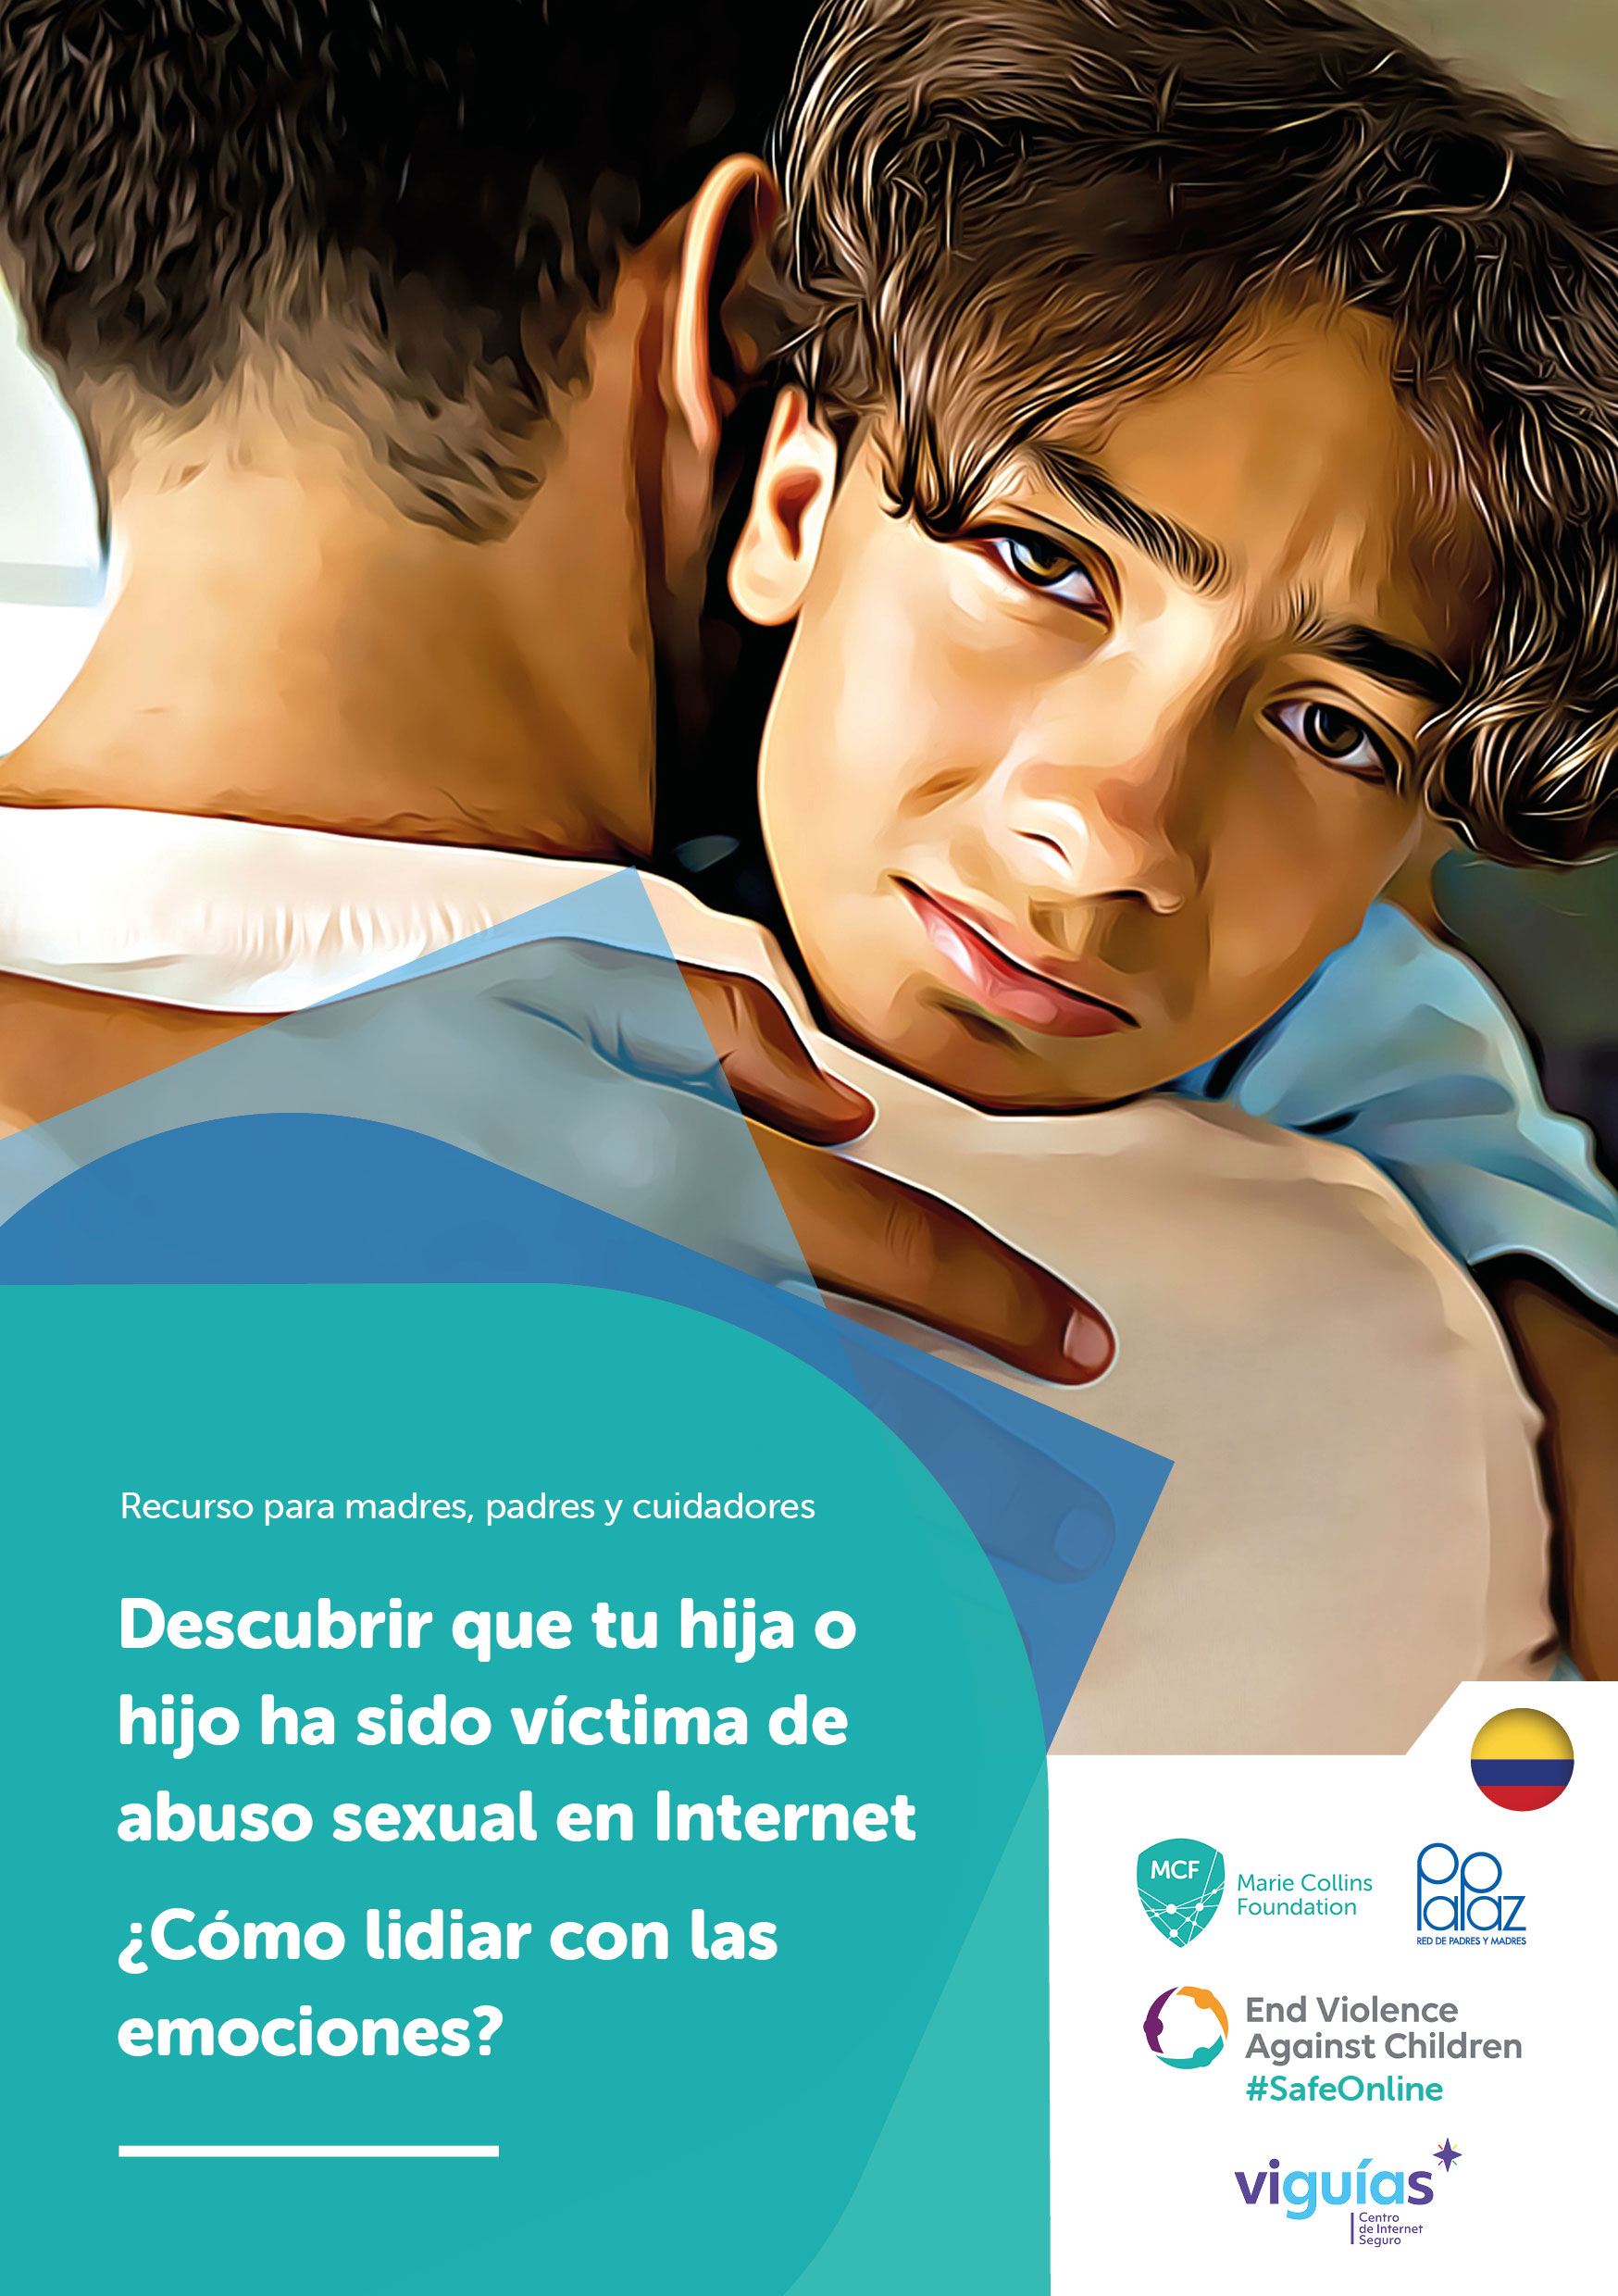 Recurso para madres, padres y cuidadores Descubrir que tu hija o hijo ha sido víctima de abuso sexual en Internet ¿Cómo lidiar con las emociones?